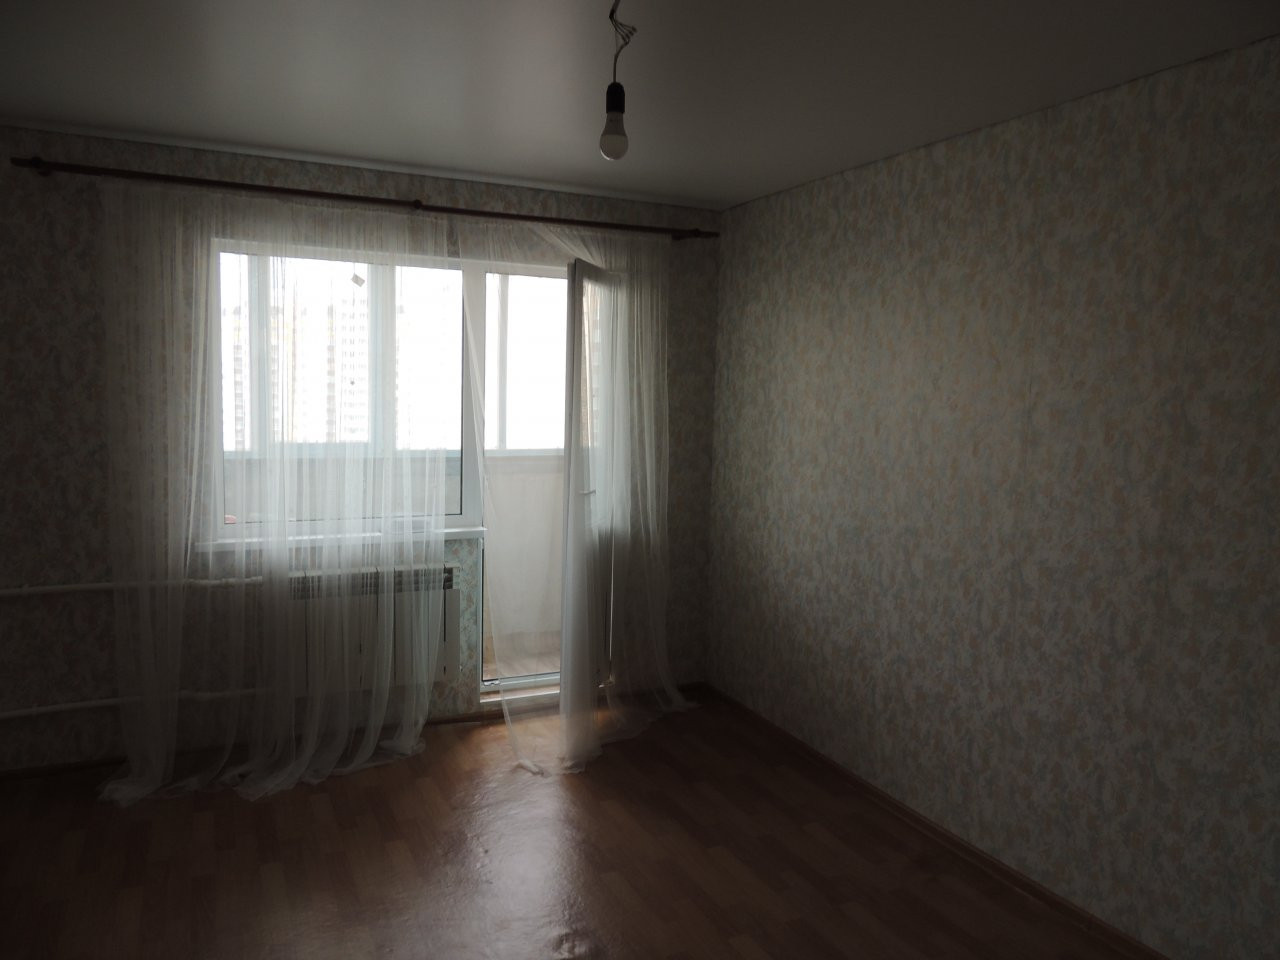 Квартира оренбург степной однокомнатная купить квартиру